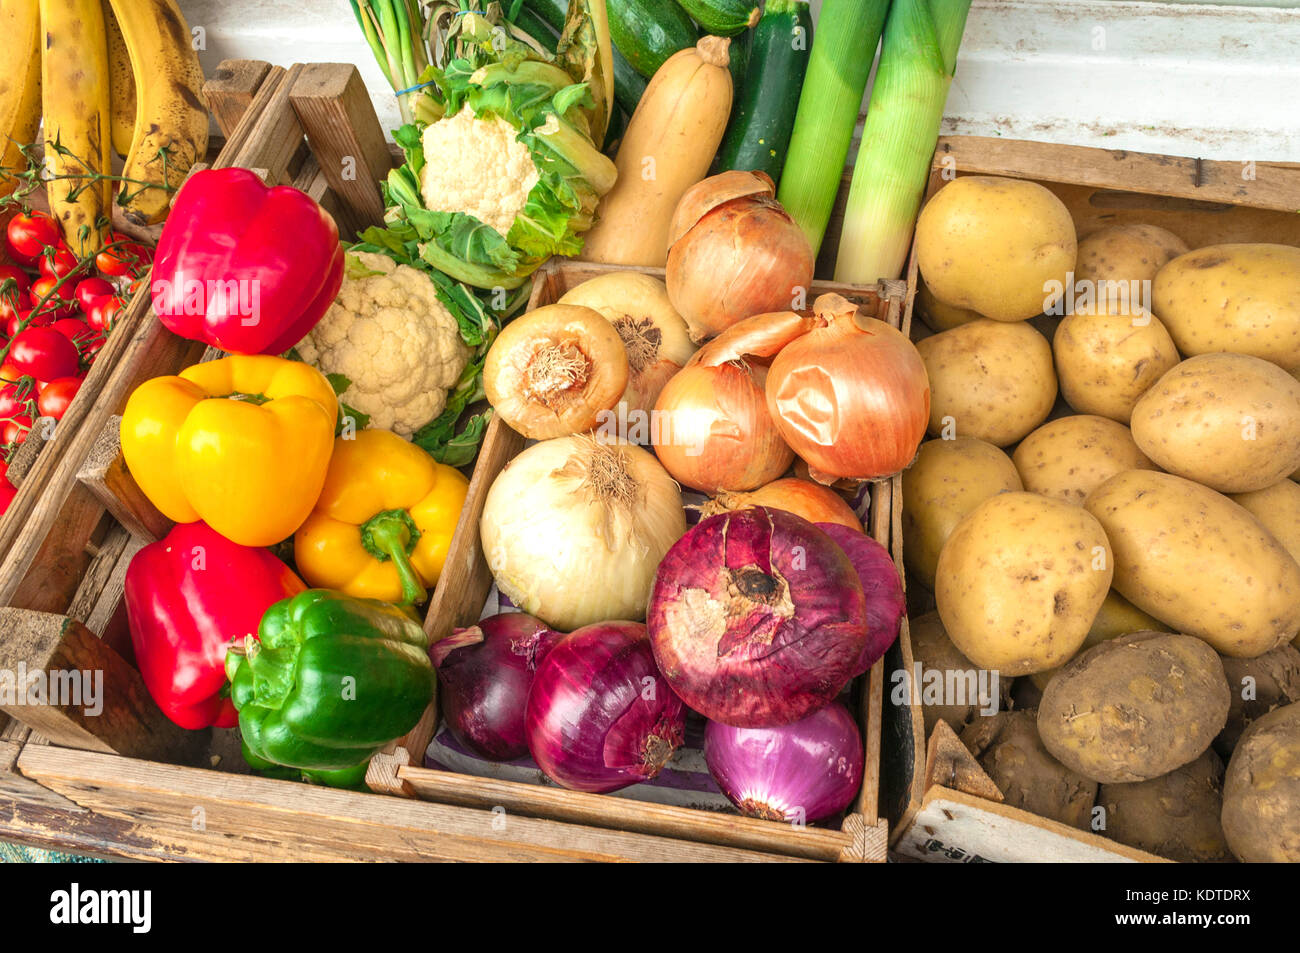 Fruits et légumes biologiques Banque D'Images